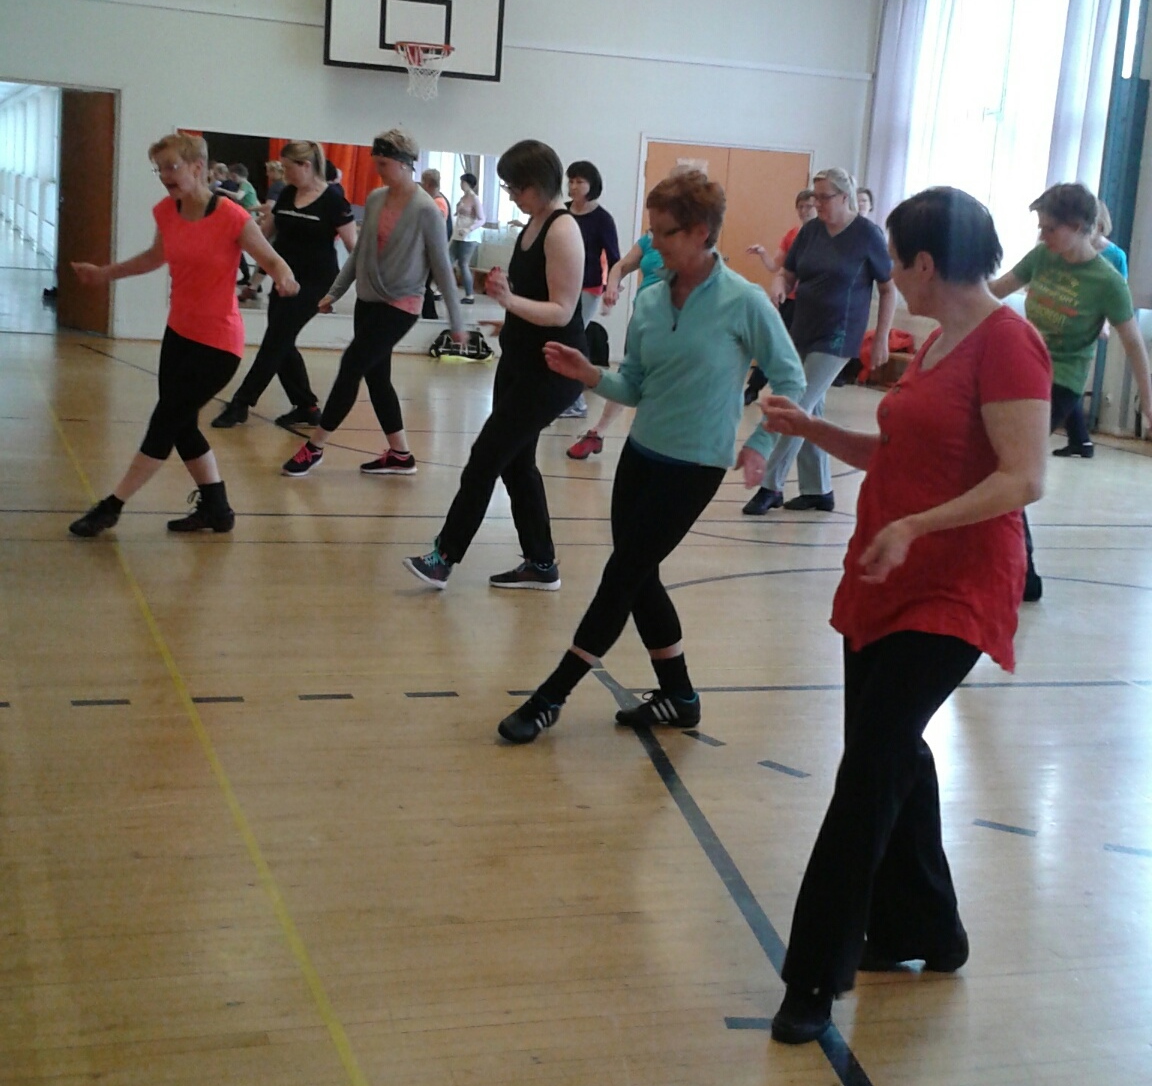 Ryhmä naisia koulun jumppasalissa opettelee tanssia opettajan johdolla. Jokaisella on toinen jalka työnnettynä eteen.